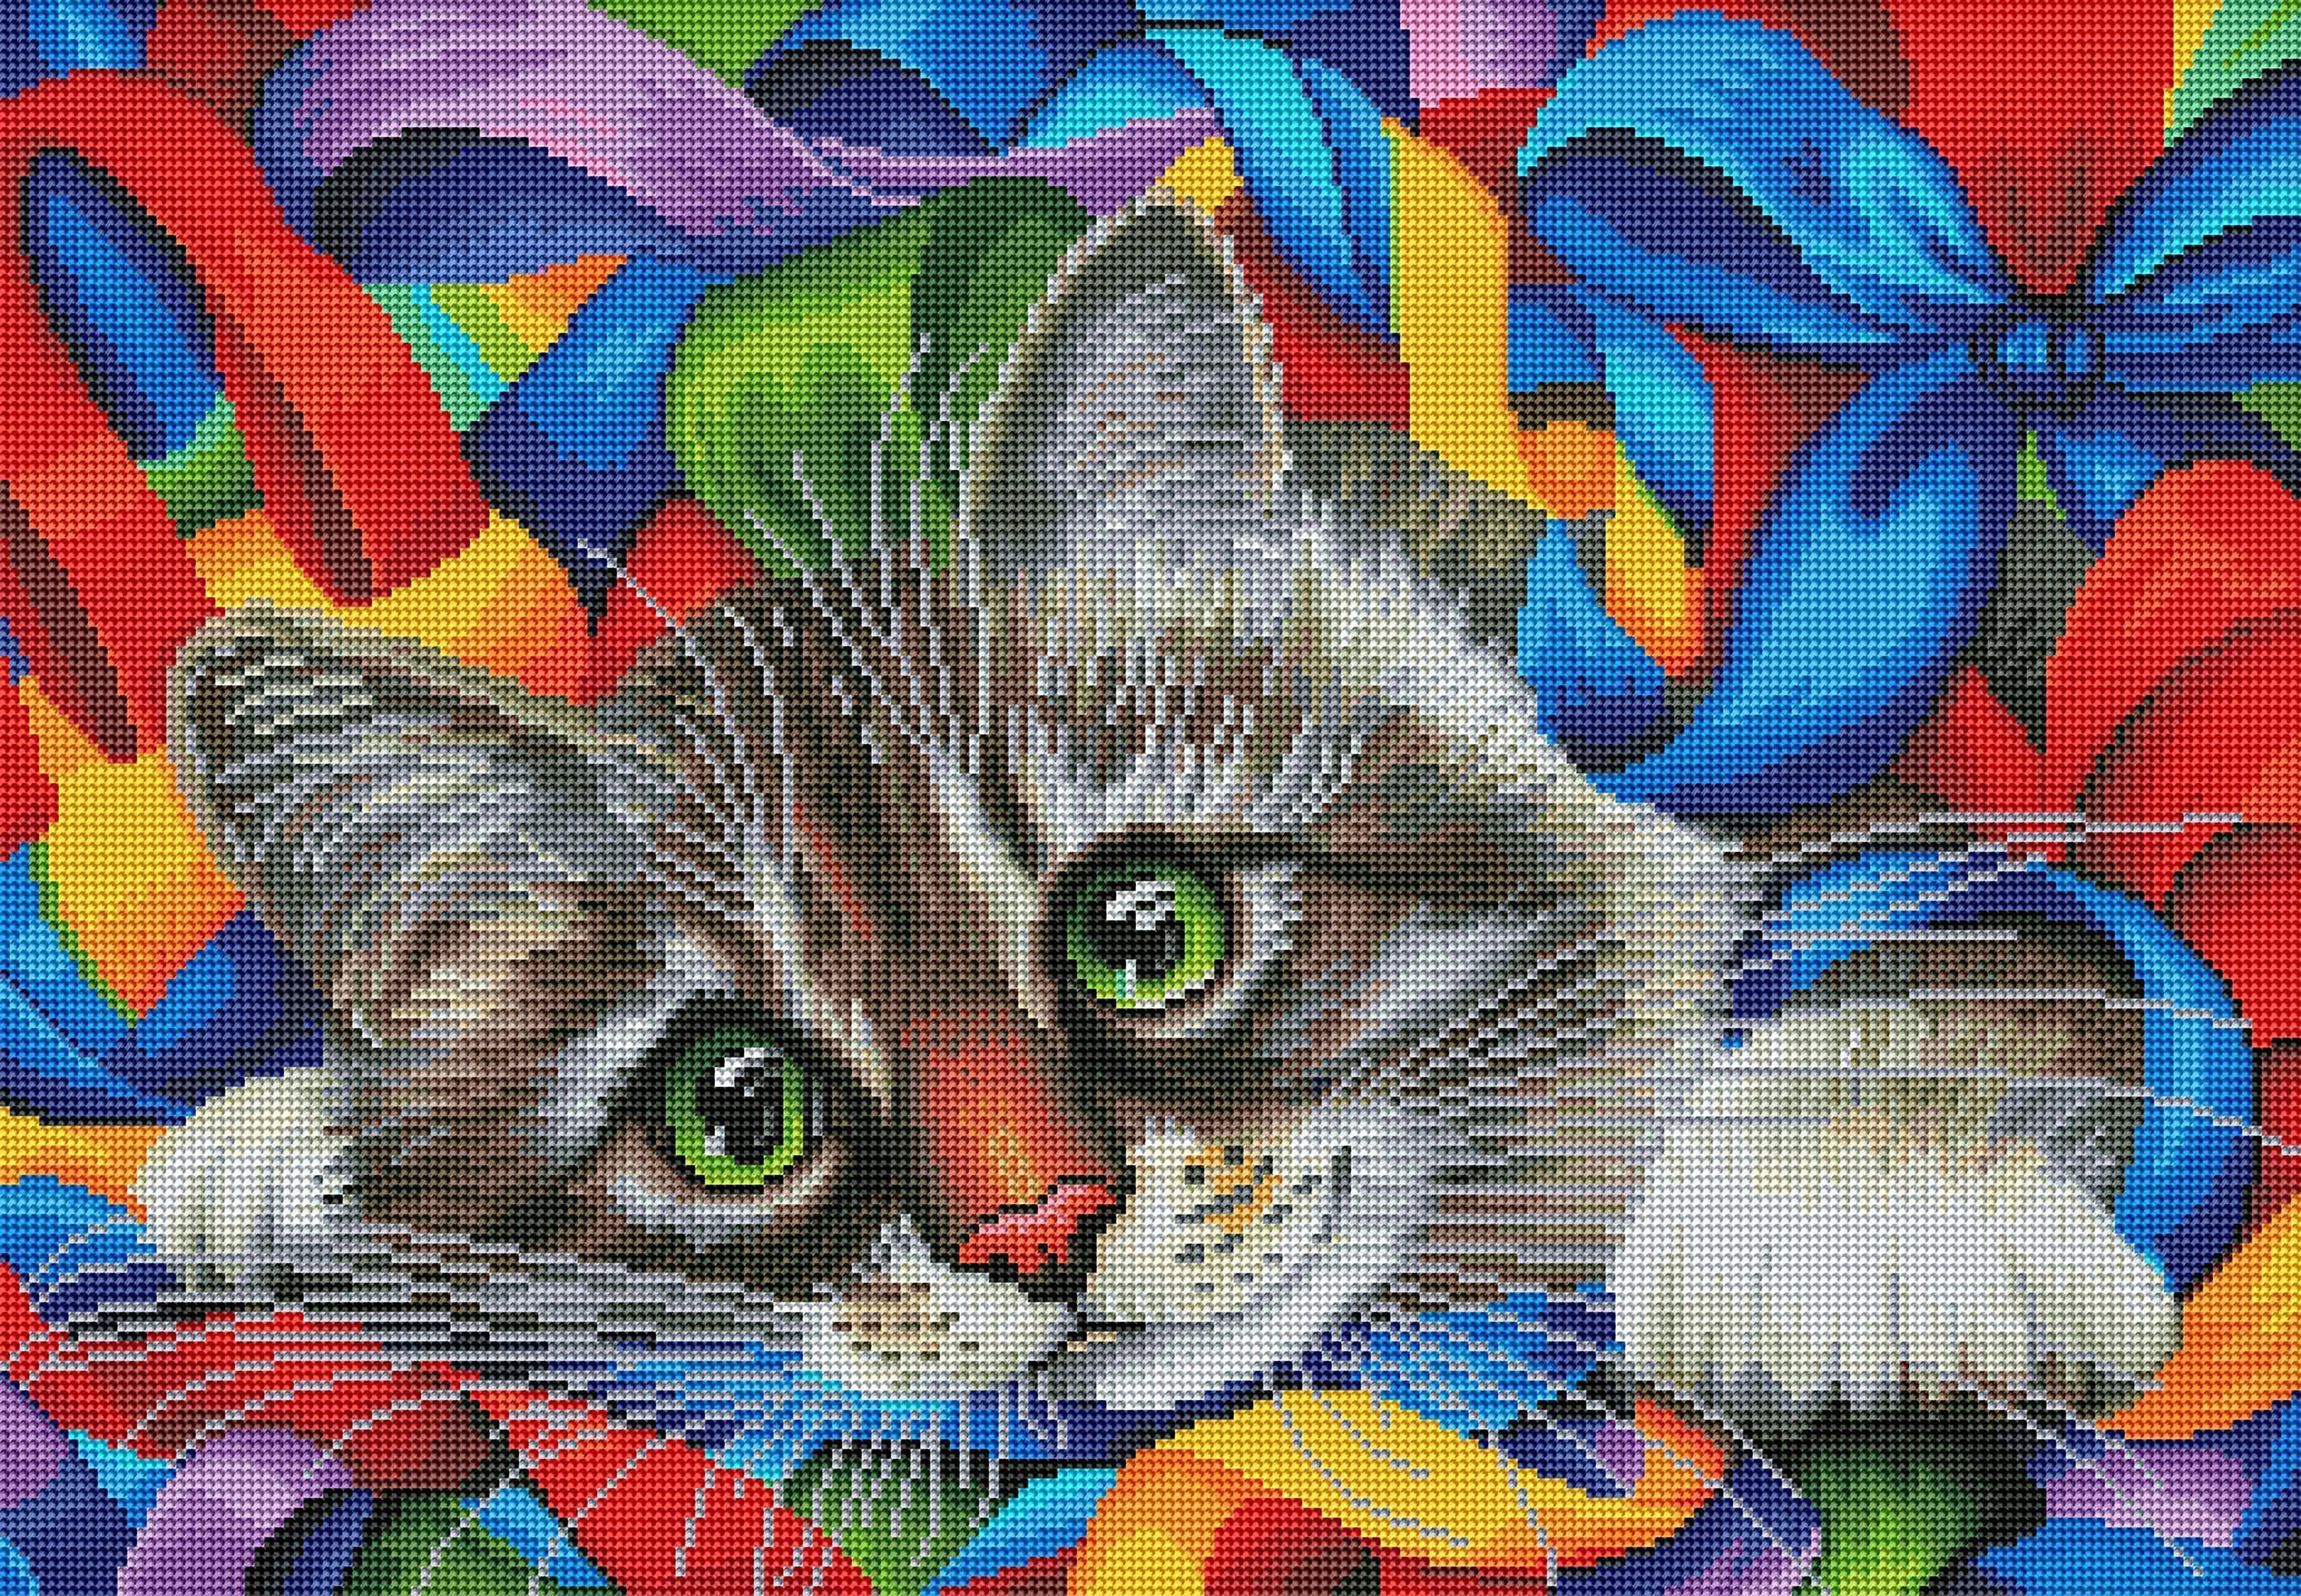 Leisure Arts, Wall Decor, Diamond Art Kitty Cat From Hobby Lobby